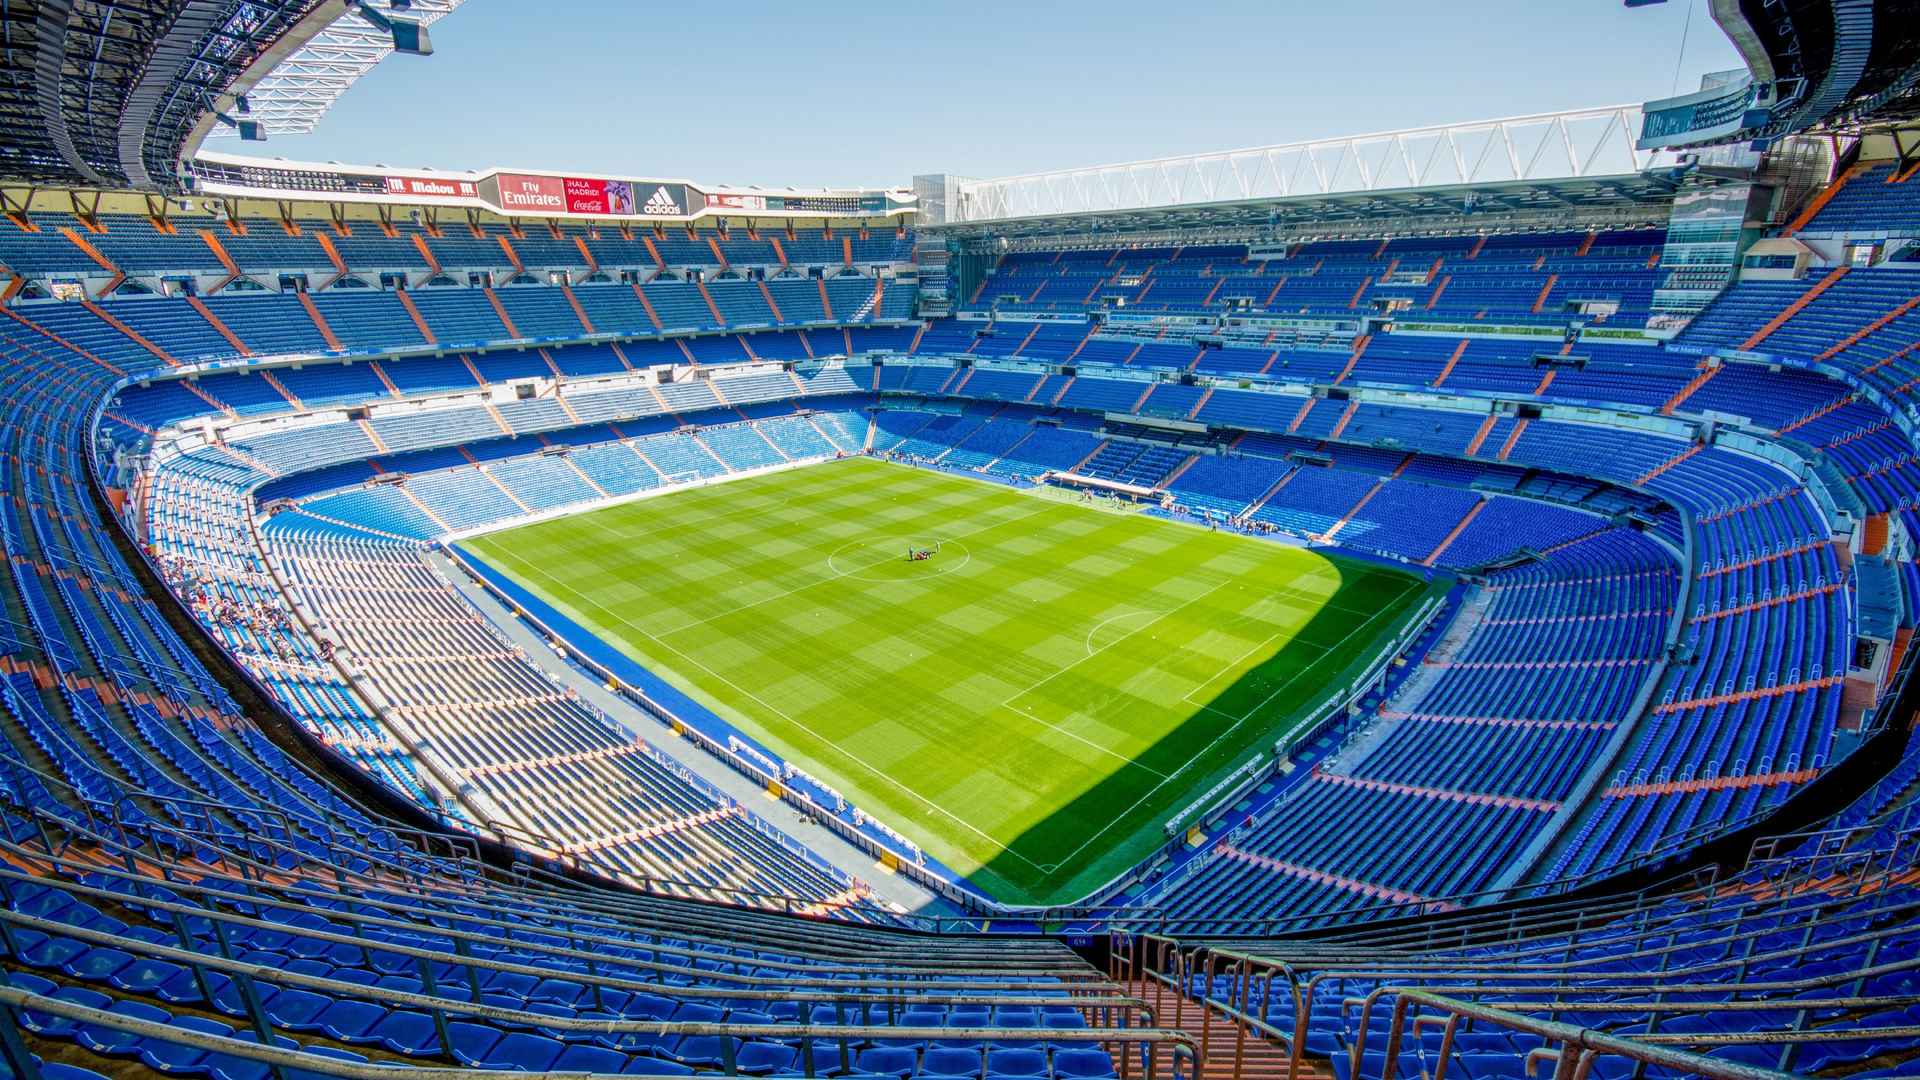 西班牙马德里 大球场 露天看台 席位 足球场 体育馆全景